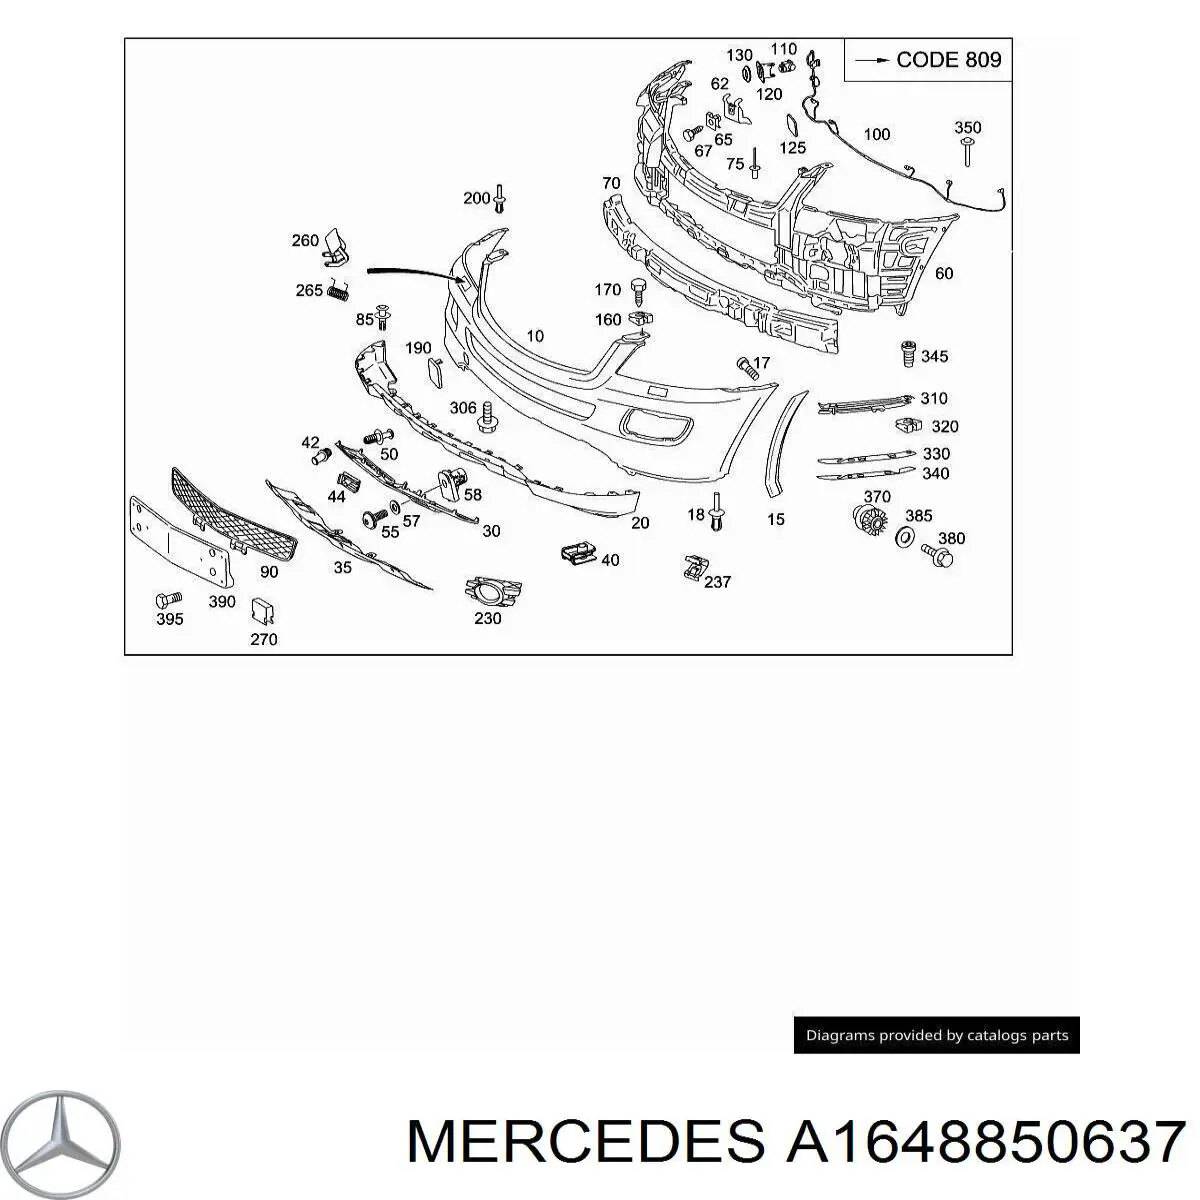 A1648850537 Mercedes абсорбер (наполнитель бампера переднего)